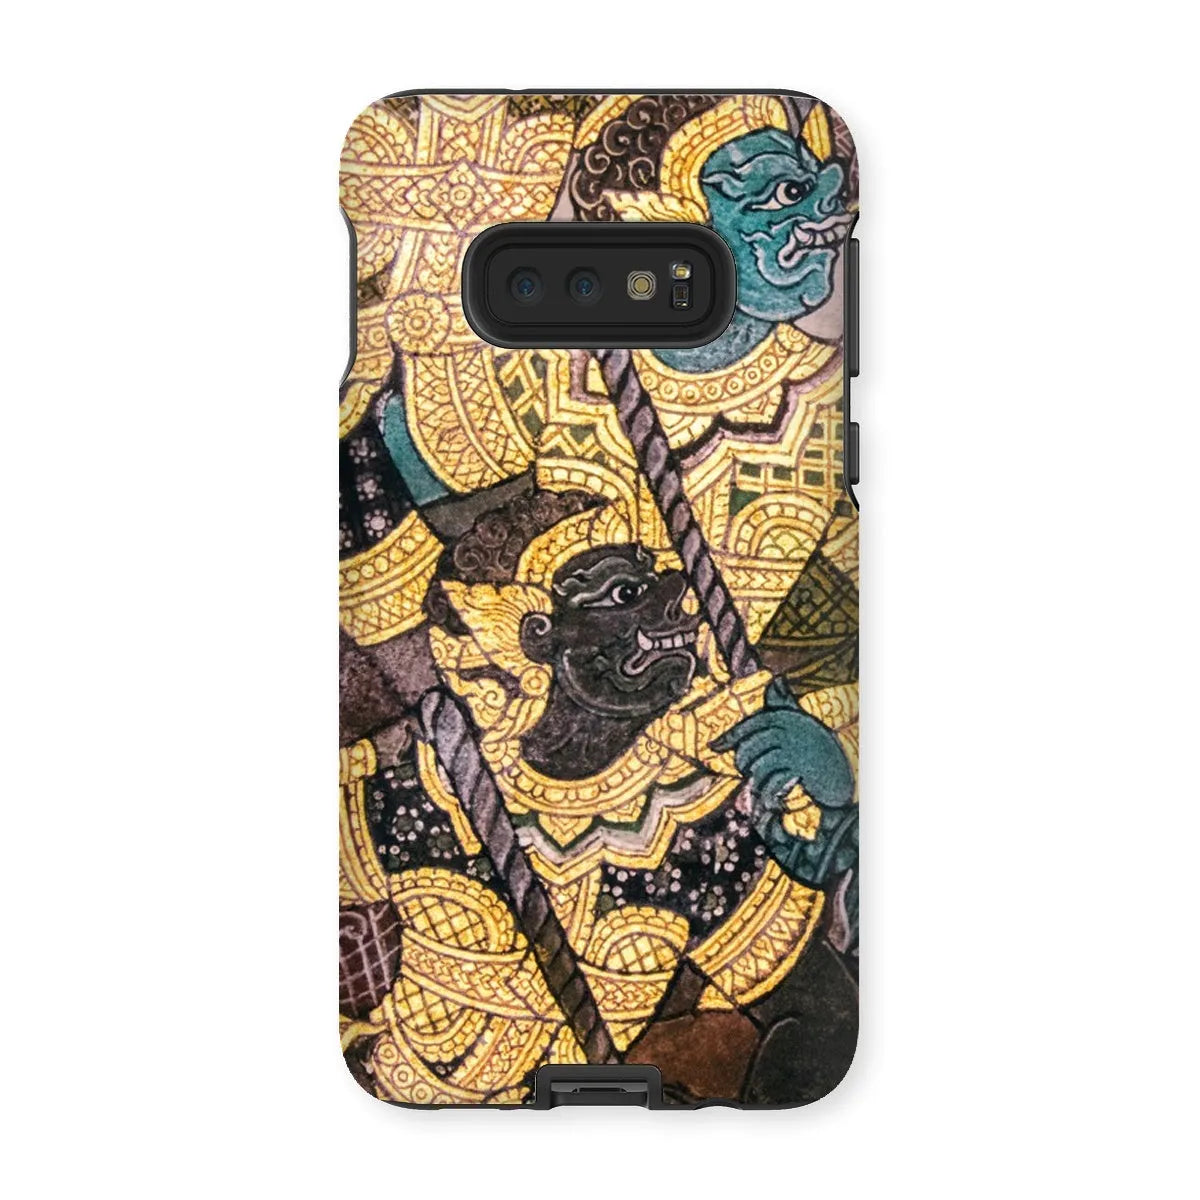 Action Men - Ancient Thai Temple Art Phone Case - Samsung Galaxy S10e / Matte - Mobile Phone Cases - Aesthetic Art